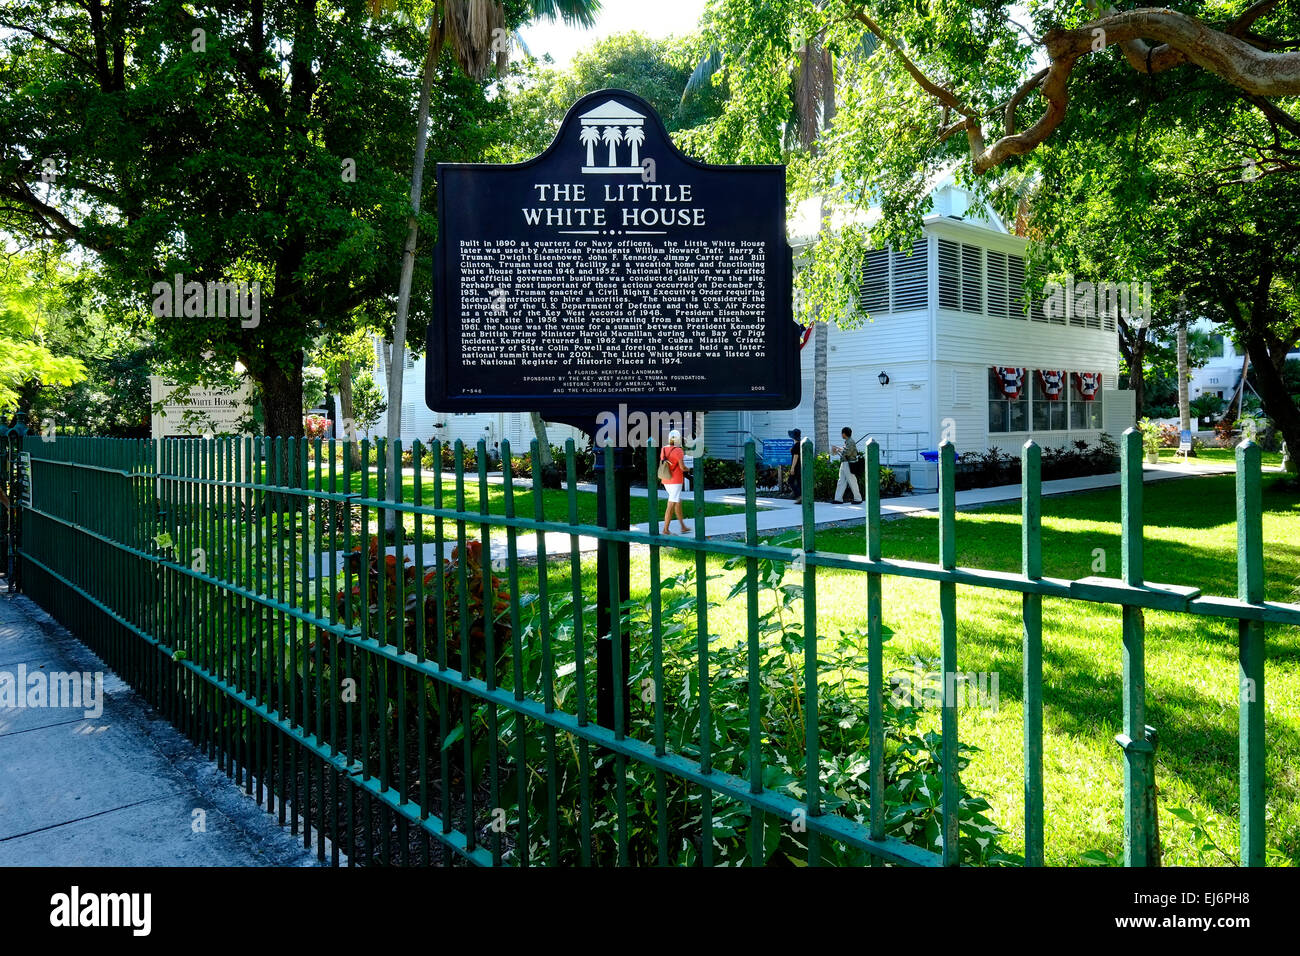 Petite Maison Blanche le président Harry Truman Key West FL Floride destination pour l'ouest de Tampa Crusie Caraïbes Banque D'Images